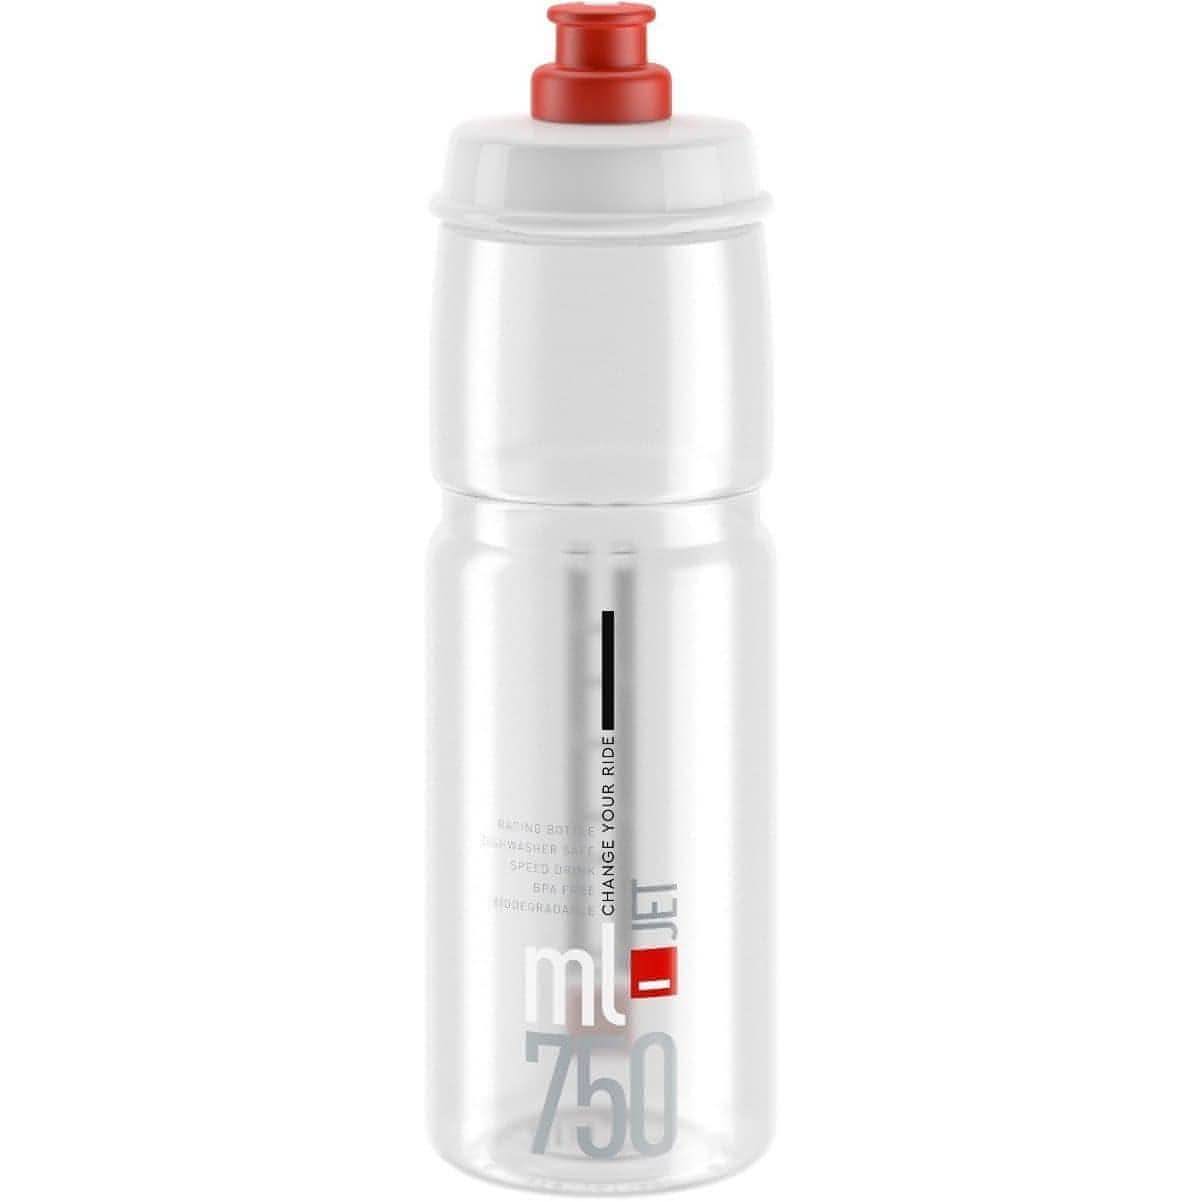 Elite Jet Biodegradable 750ml Water Bottle - Red 8020775036051 - Start Fitness